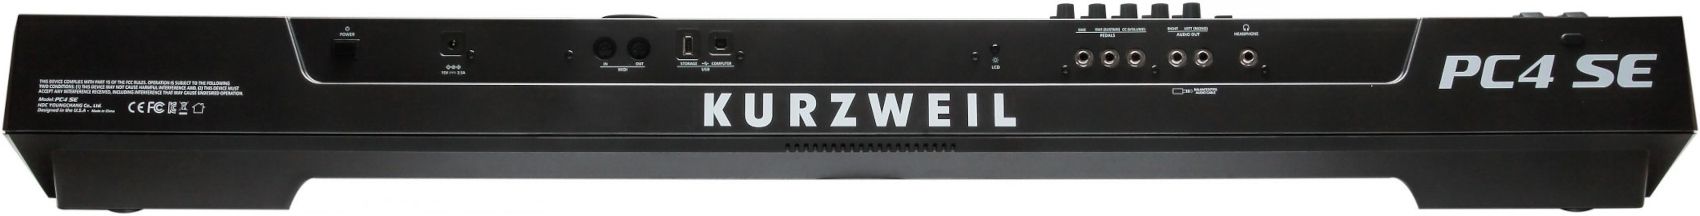 Kurzweil PC4 - фото 6